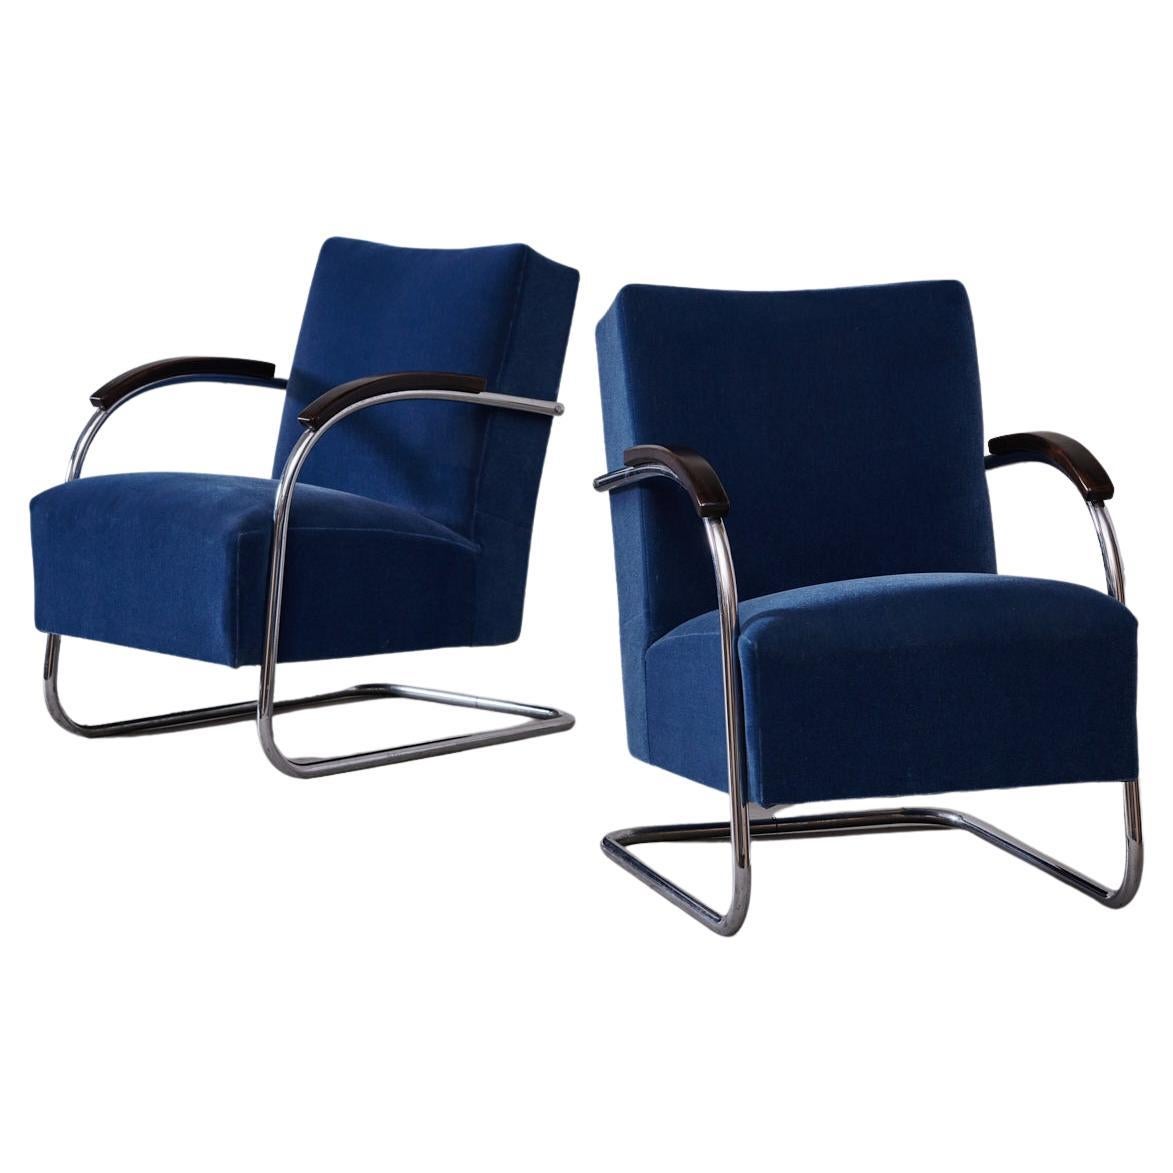 Mücke & Melder Lounge Chairs